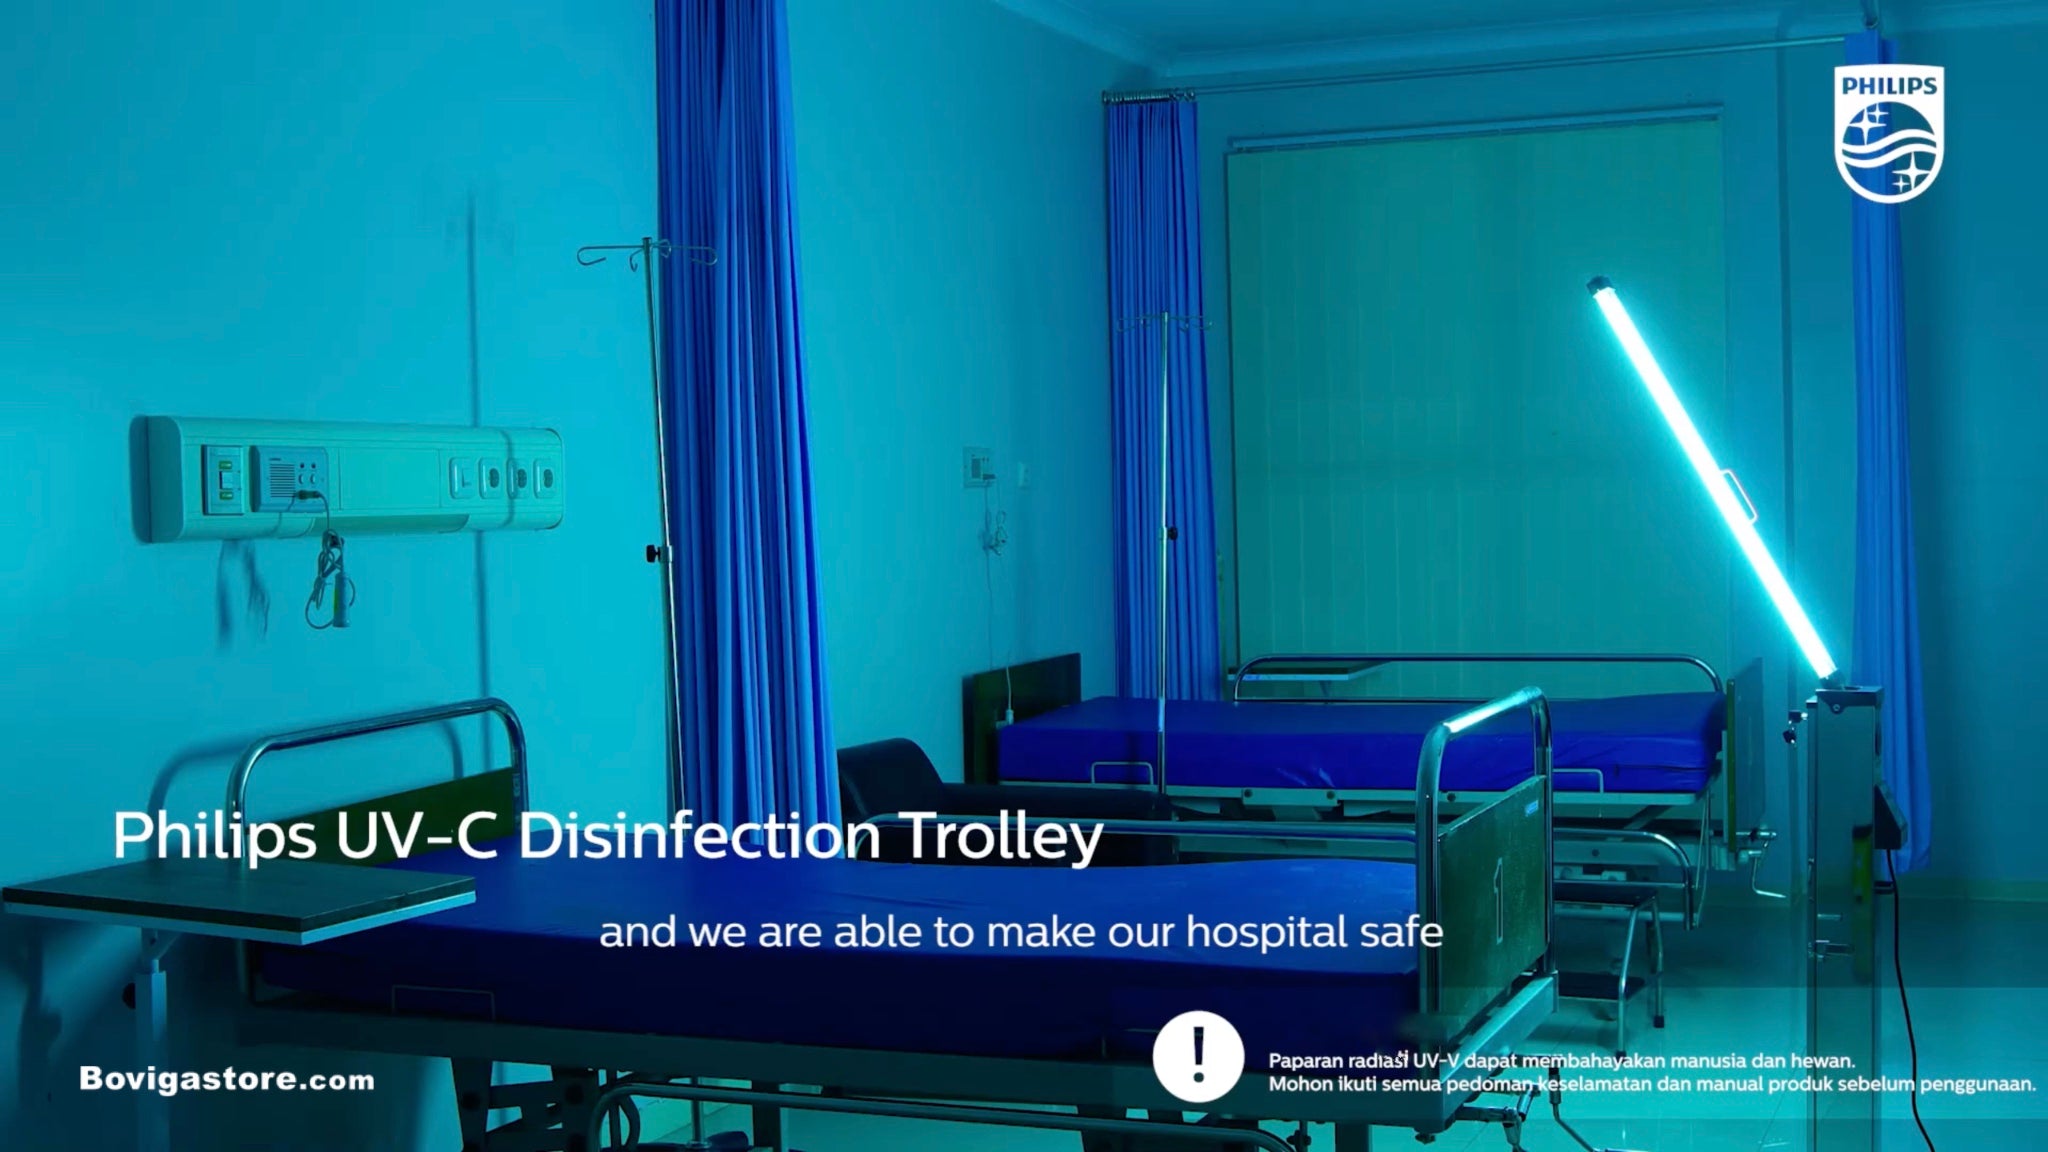 ตัวอย่างการใช้งานรถเข็น UVC disinfection trolley สำหรับยับยั้งเชื้อโรคในโรงพยาบาล